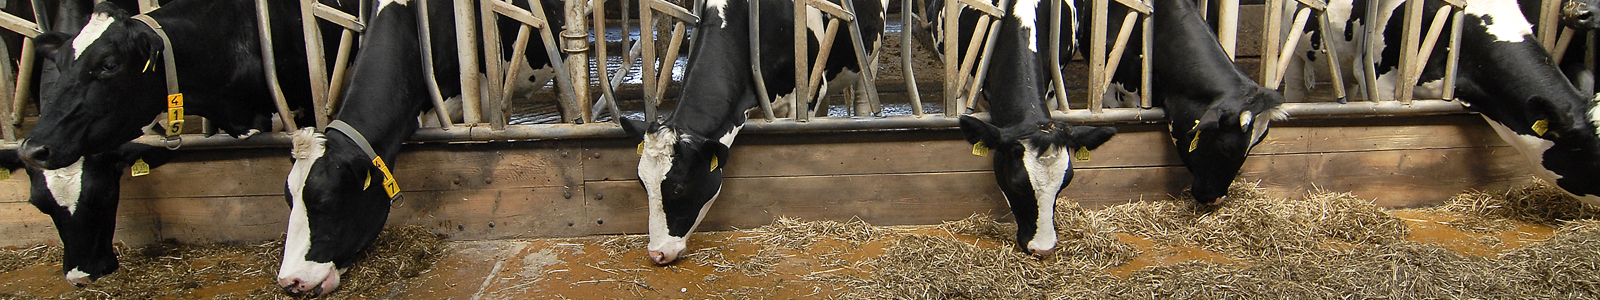 Kühe im Stall fressen ©Feuerbach